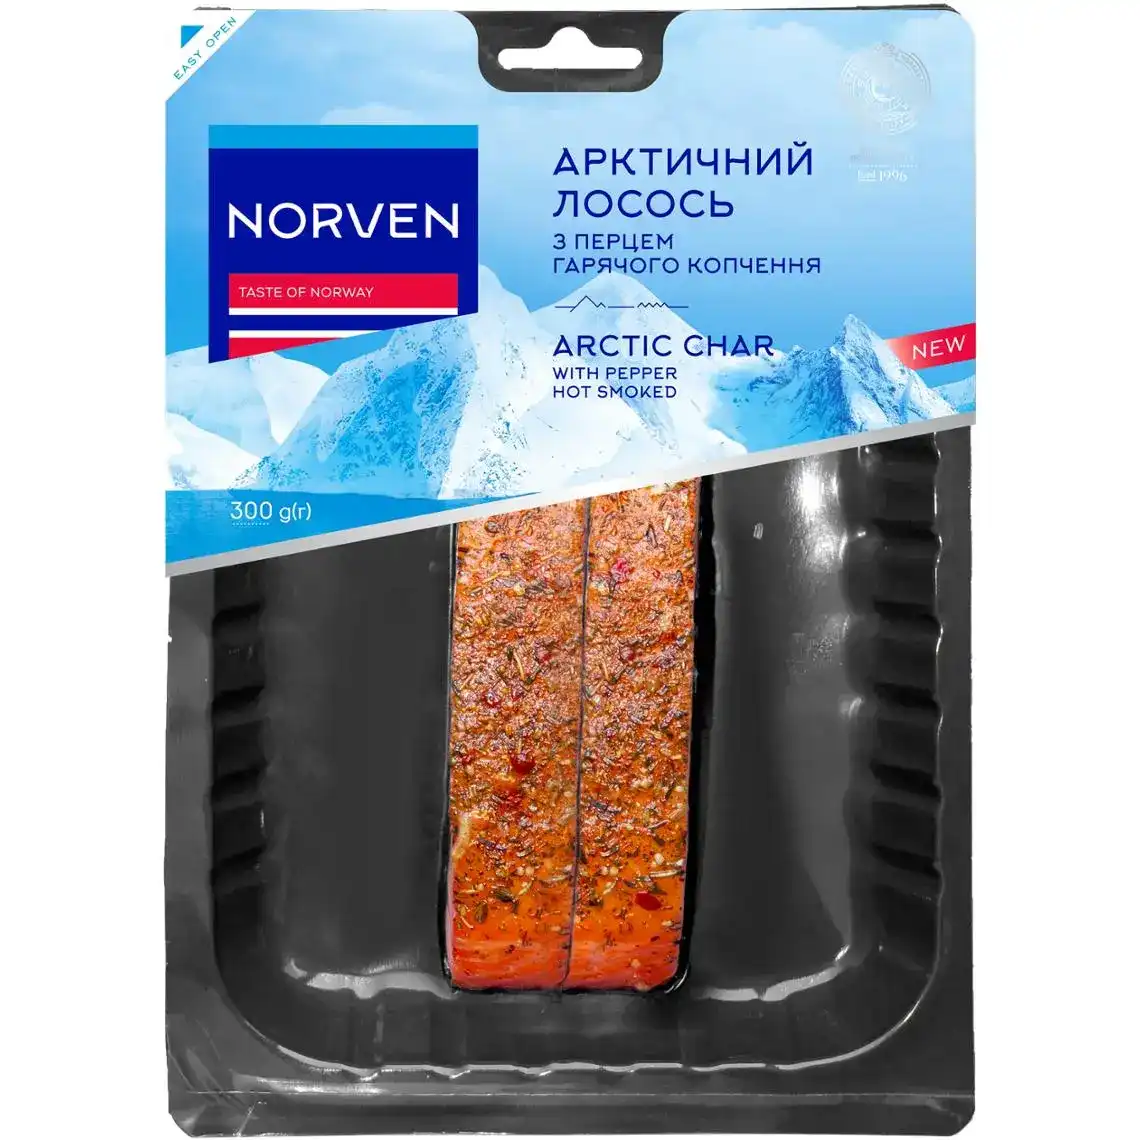 Лосось Norven Арктический филе-куоск горячего копчения с перцем 300 г